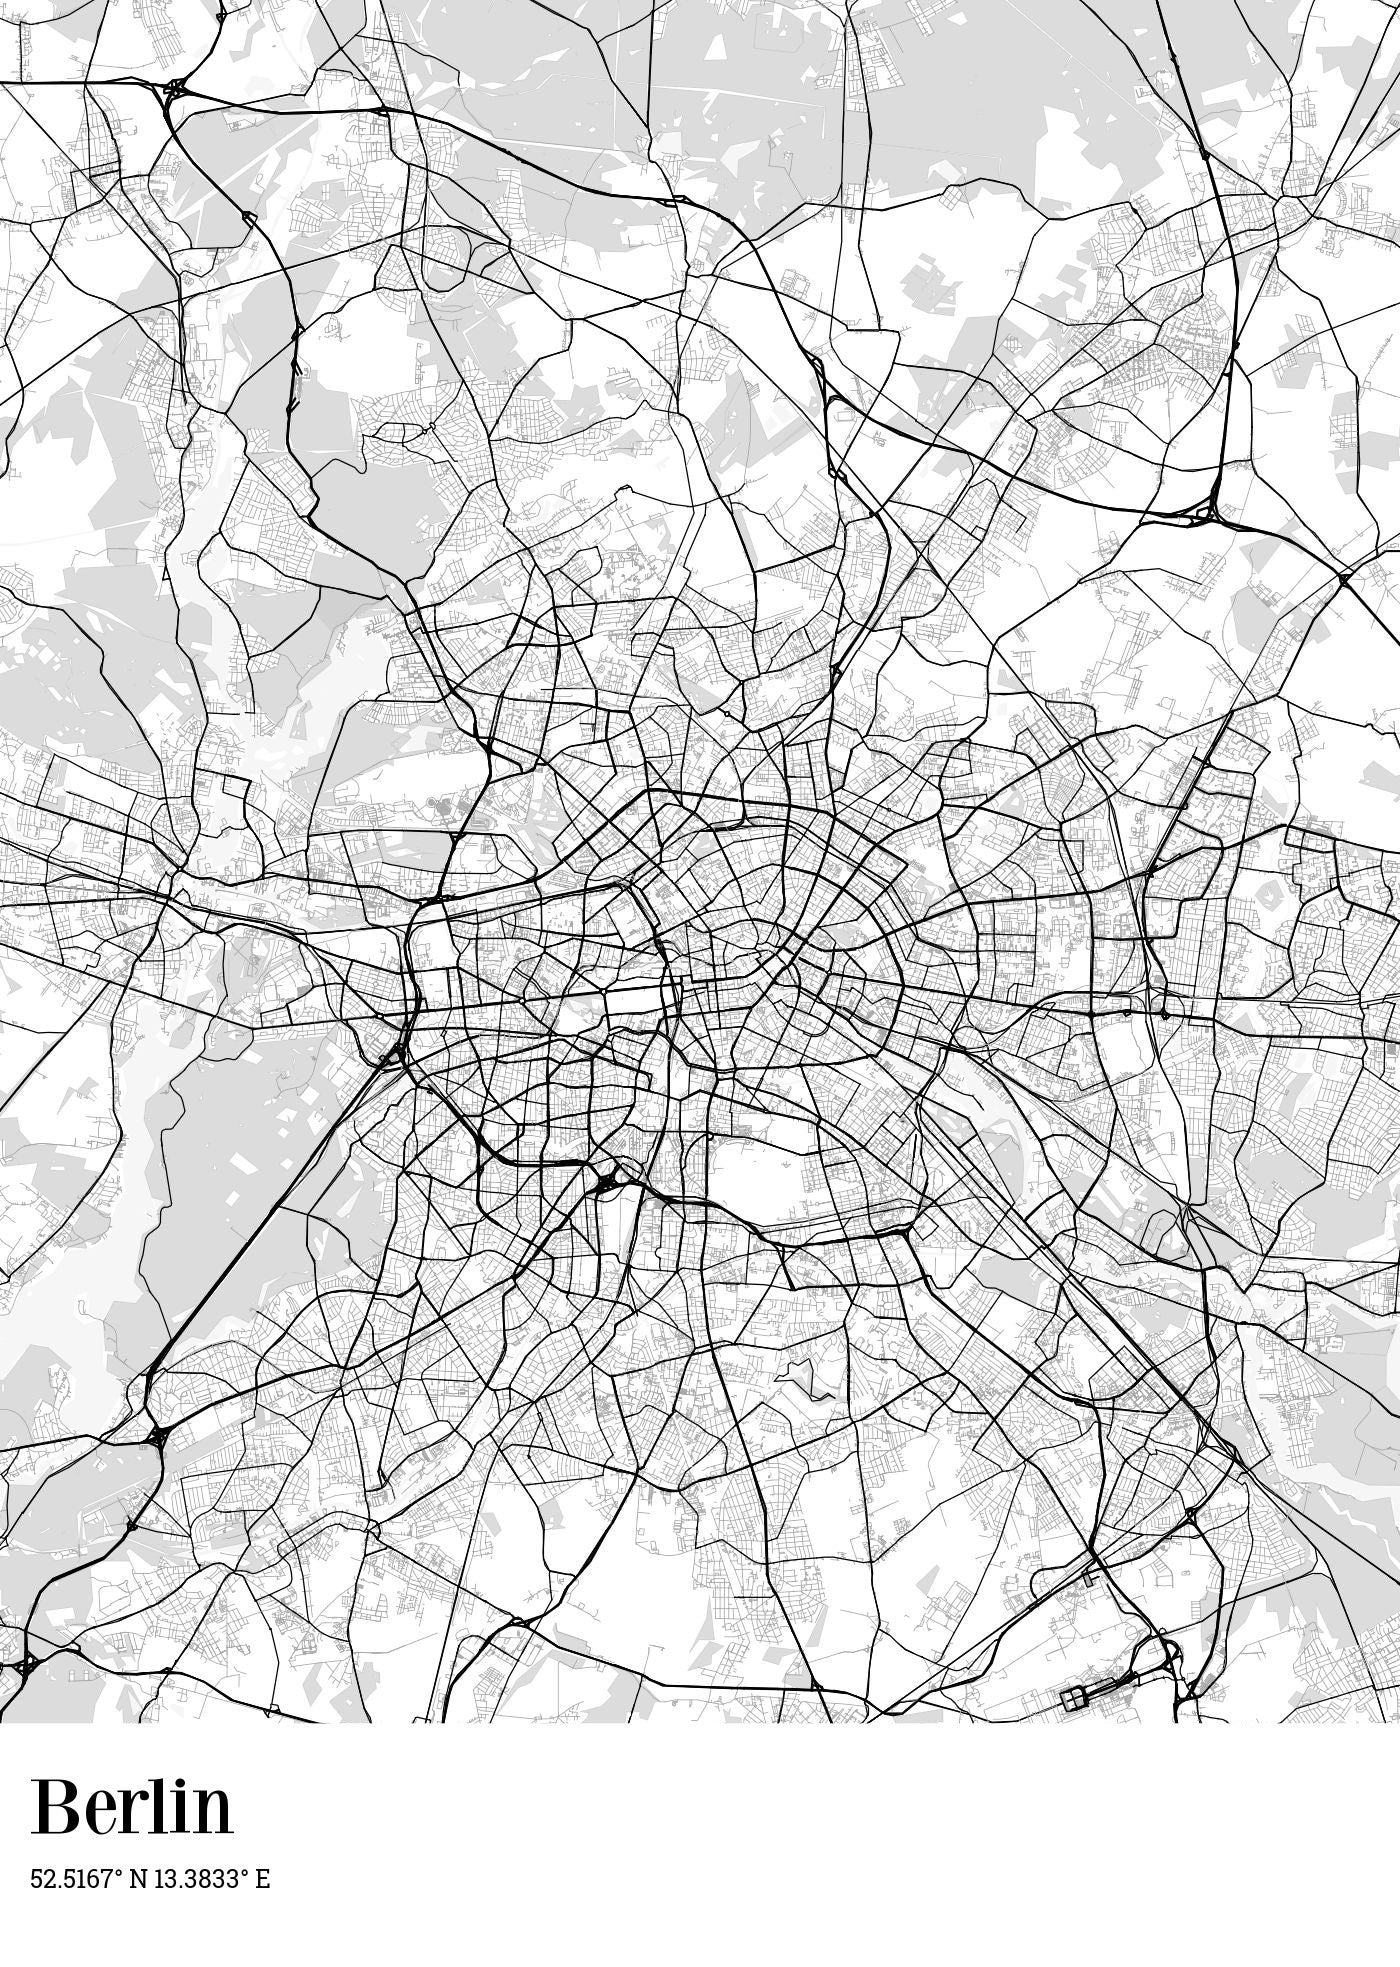  Stadsplattegrond met speld voorbeeld